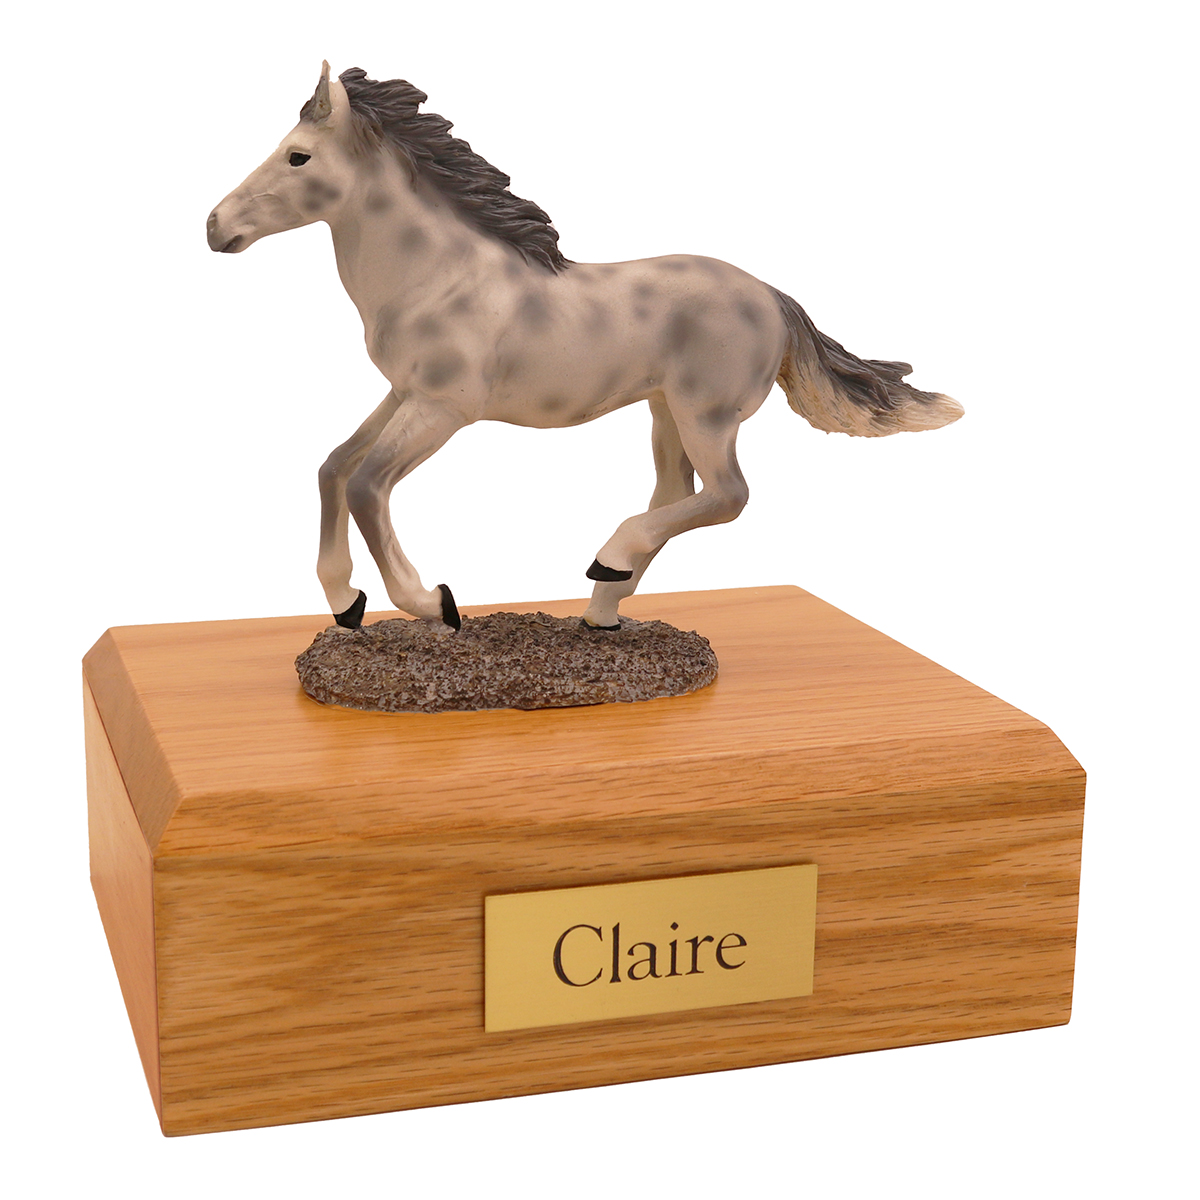 Horse, Dapple, Gray, Running - Figurine Urn